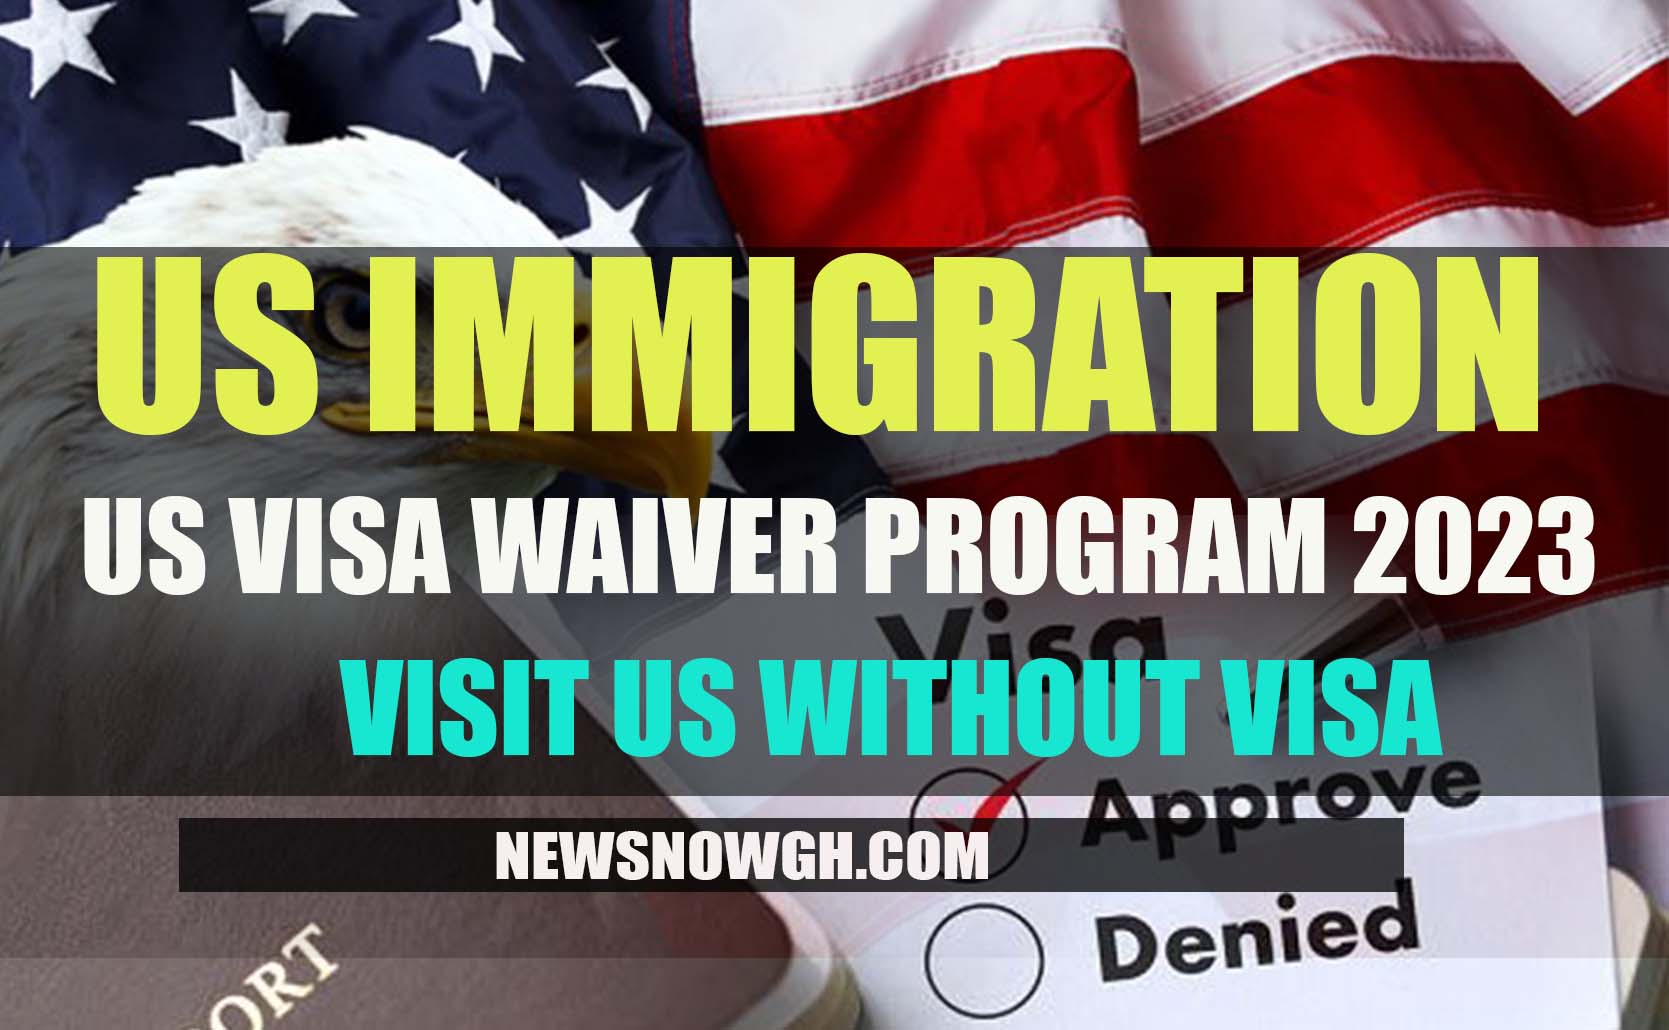 US Visa Waiver Program 2023 Visit US Without Visa